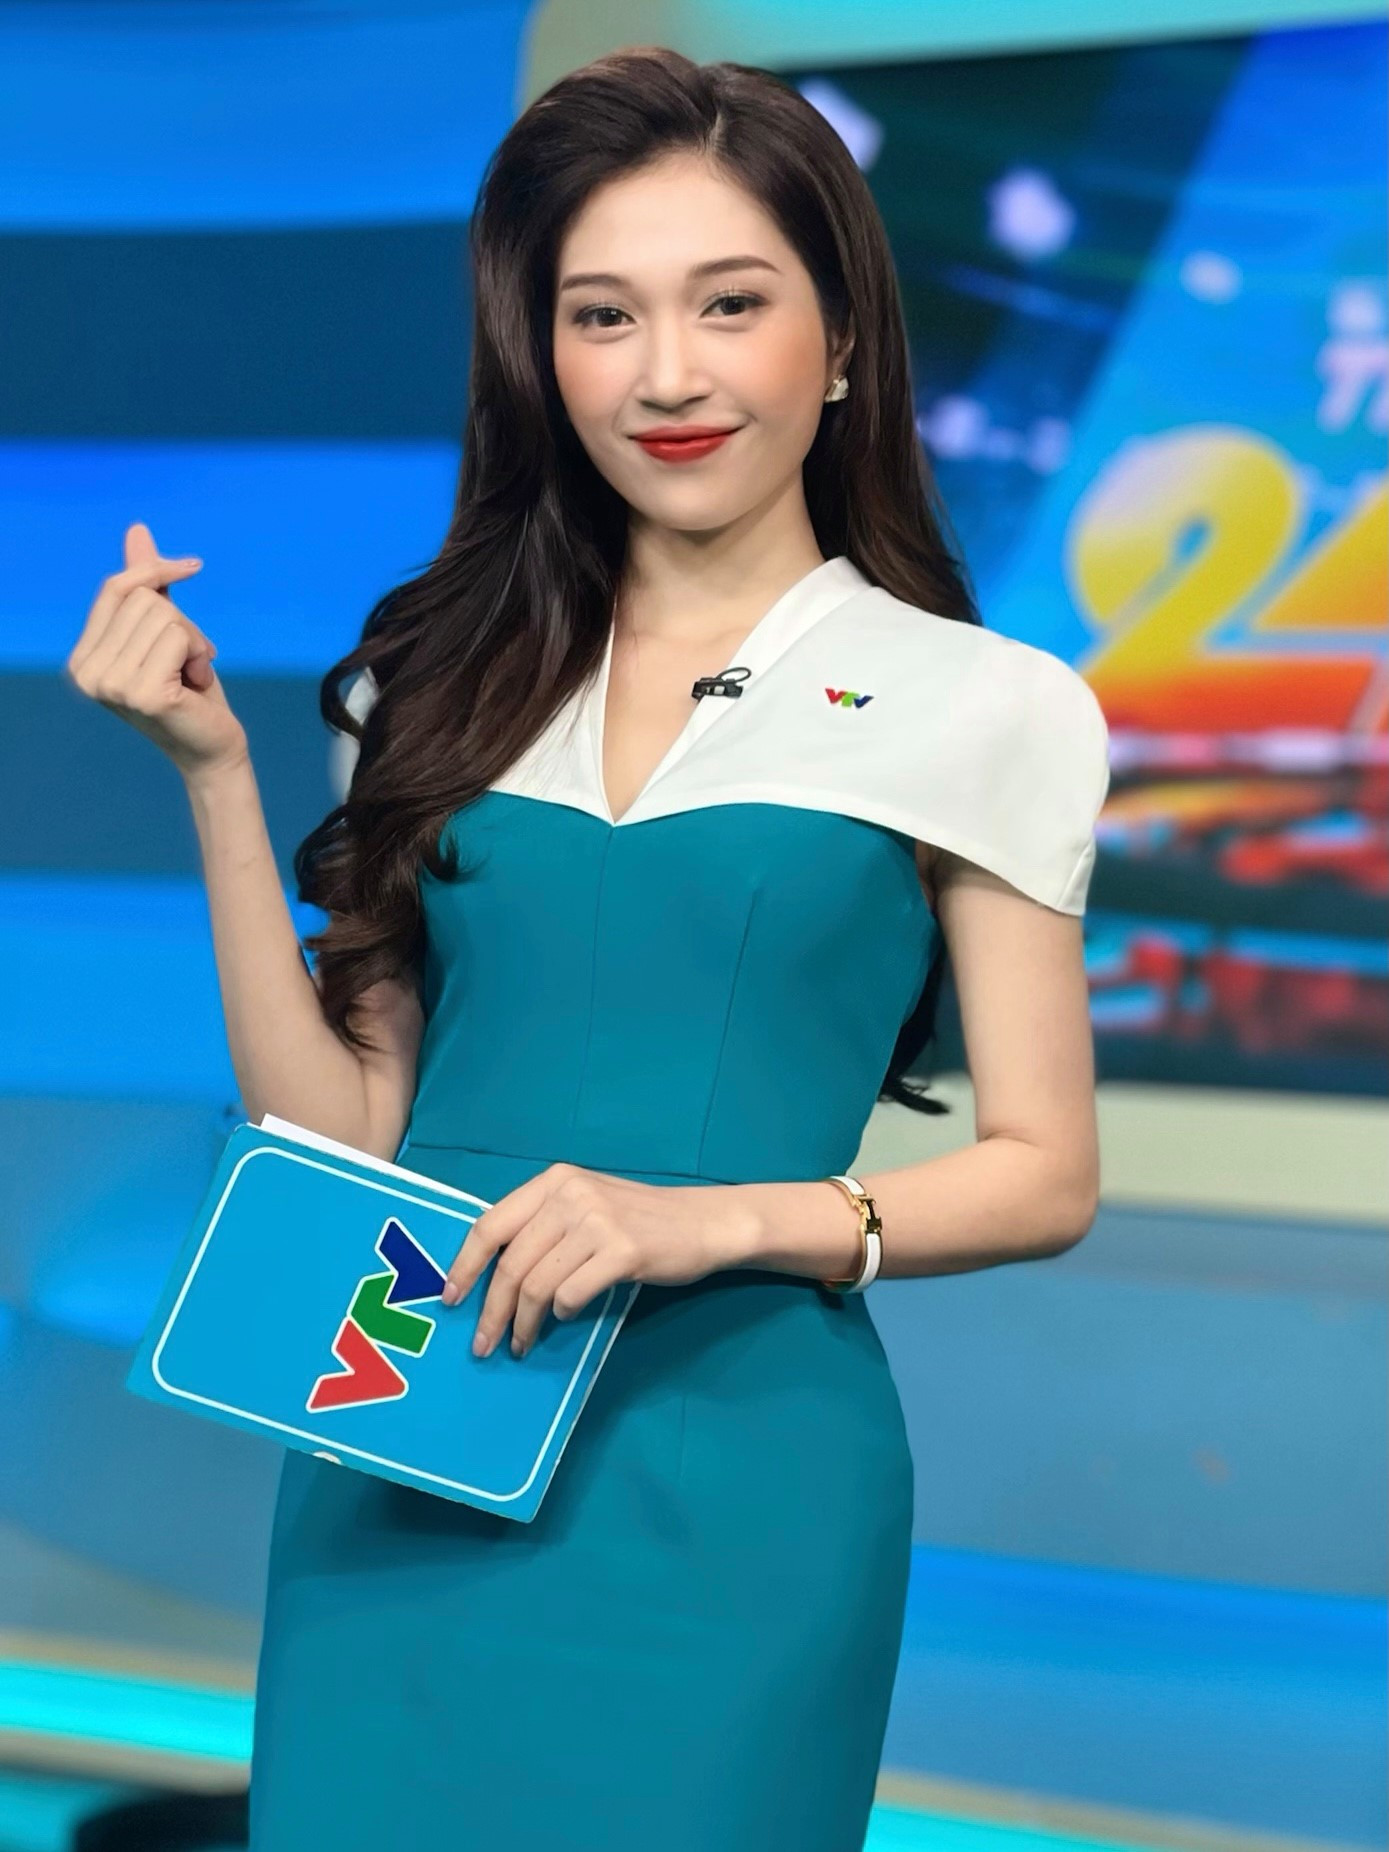 MC Ngọc Anh dẫn World Cup VTV: Tôi không thích yêu người cùng nghề - Ảnh 5.